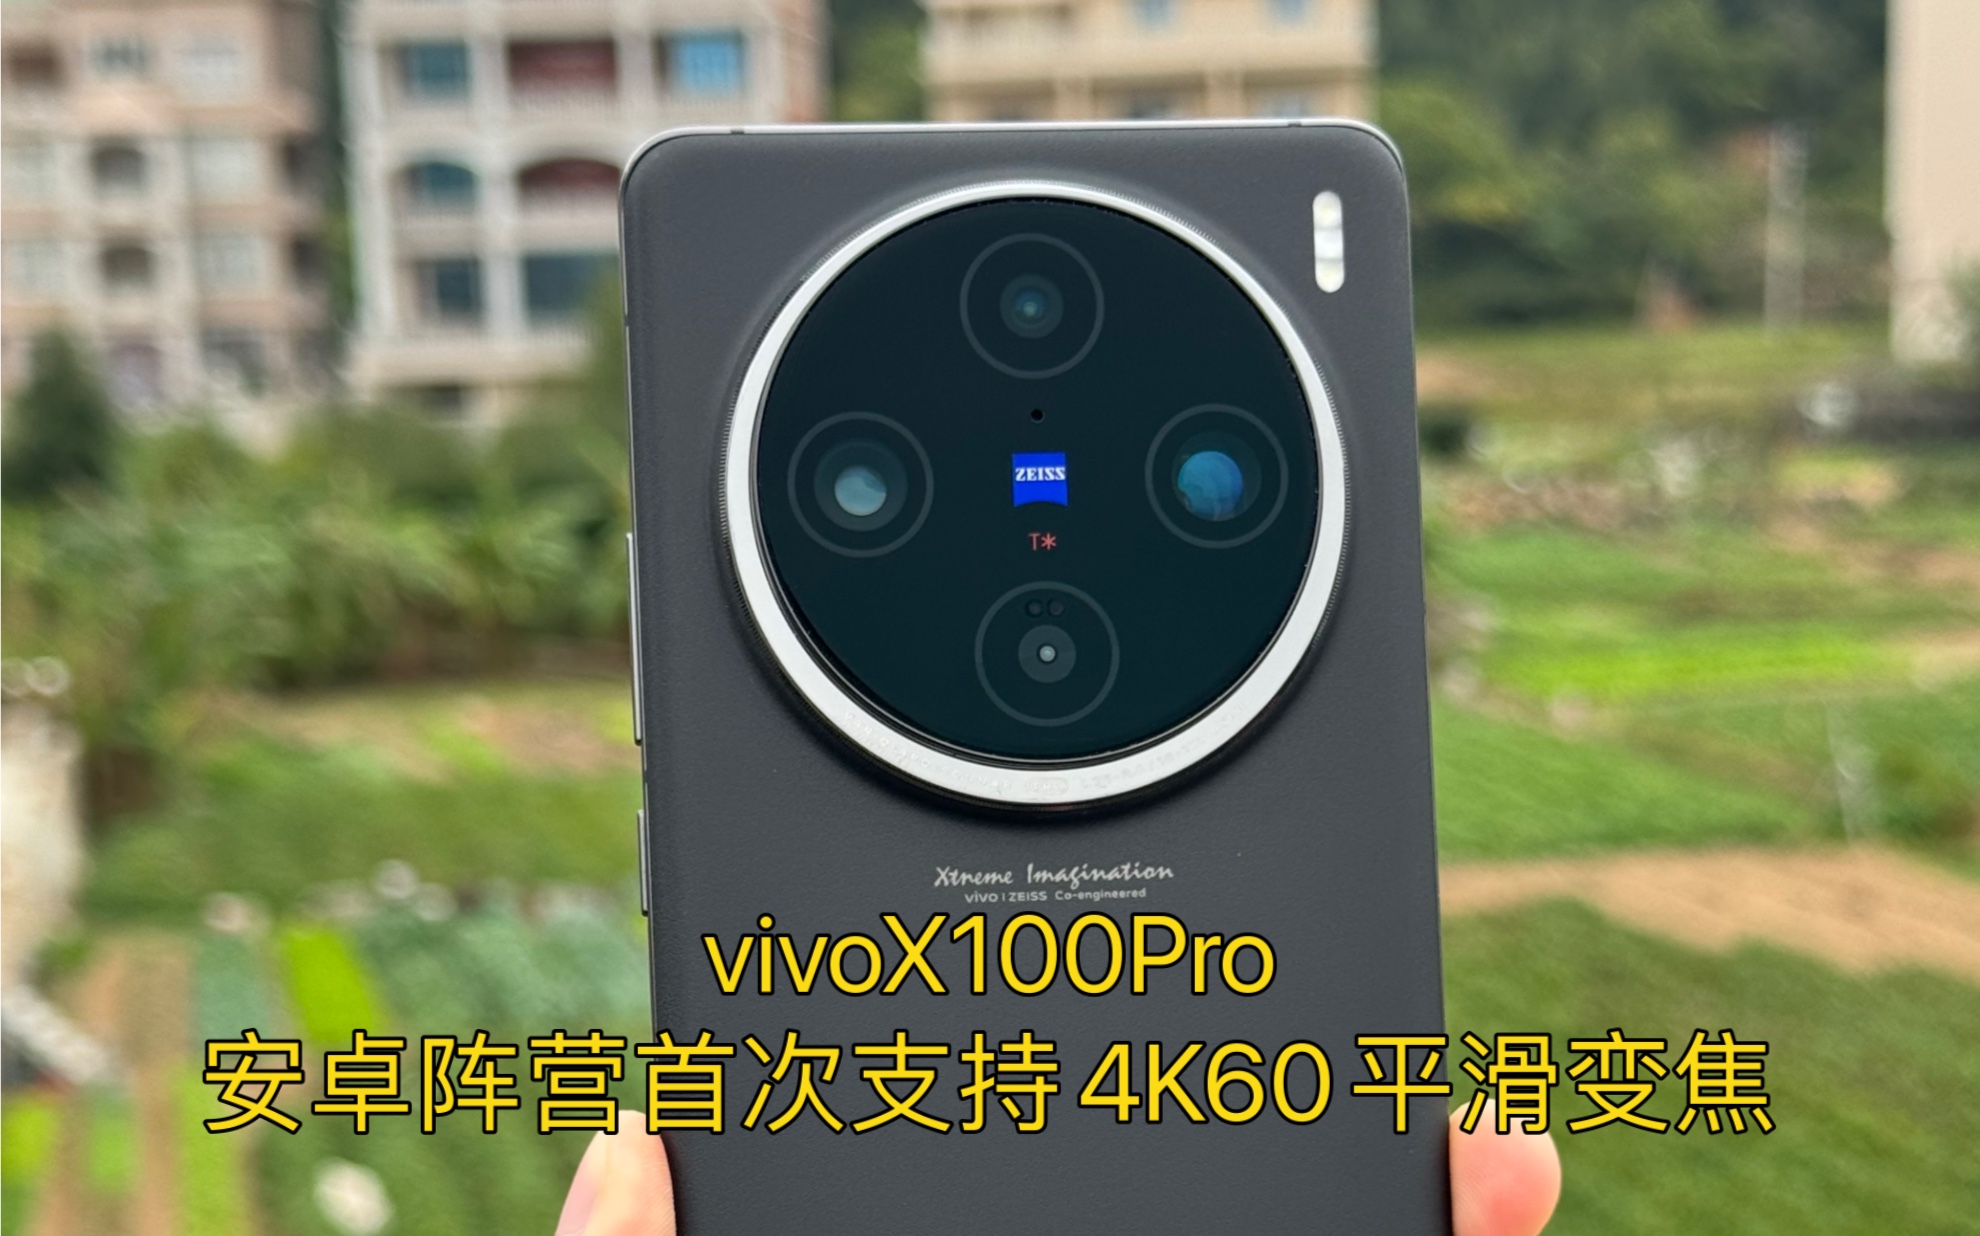 vivoX100Pro安卓阵营首次支持4K60平滑变焦